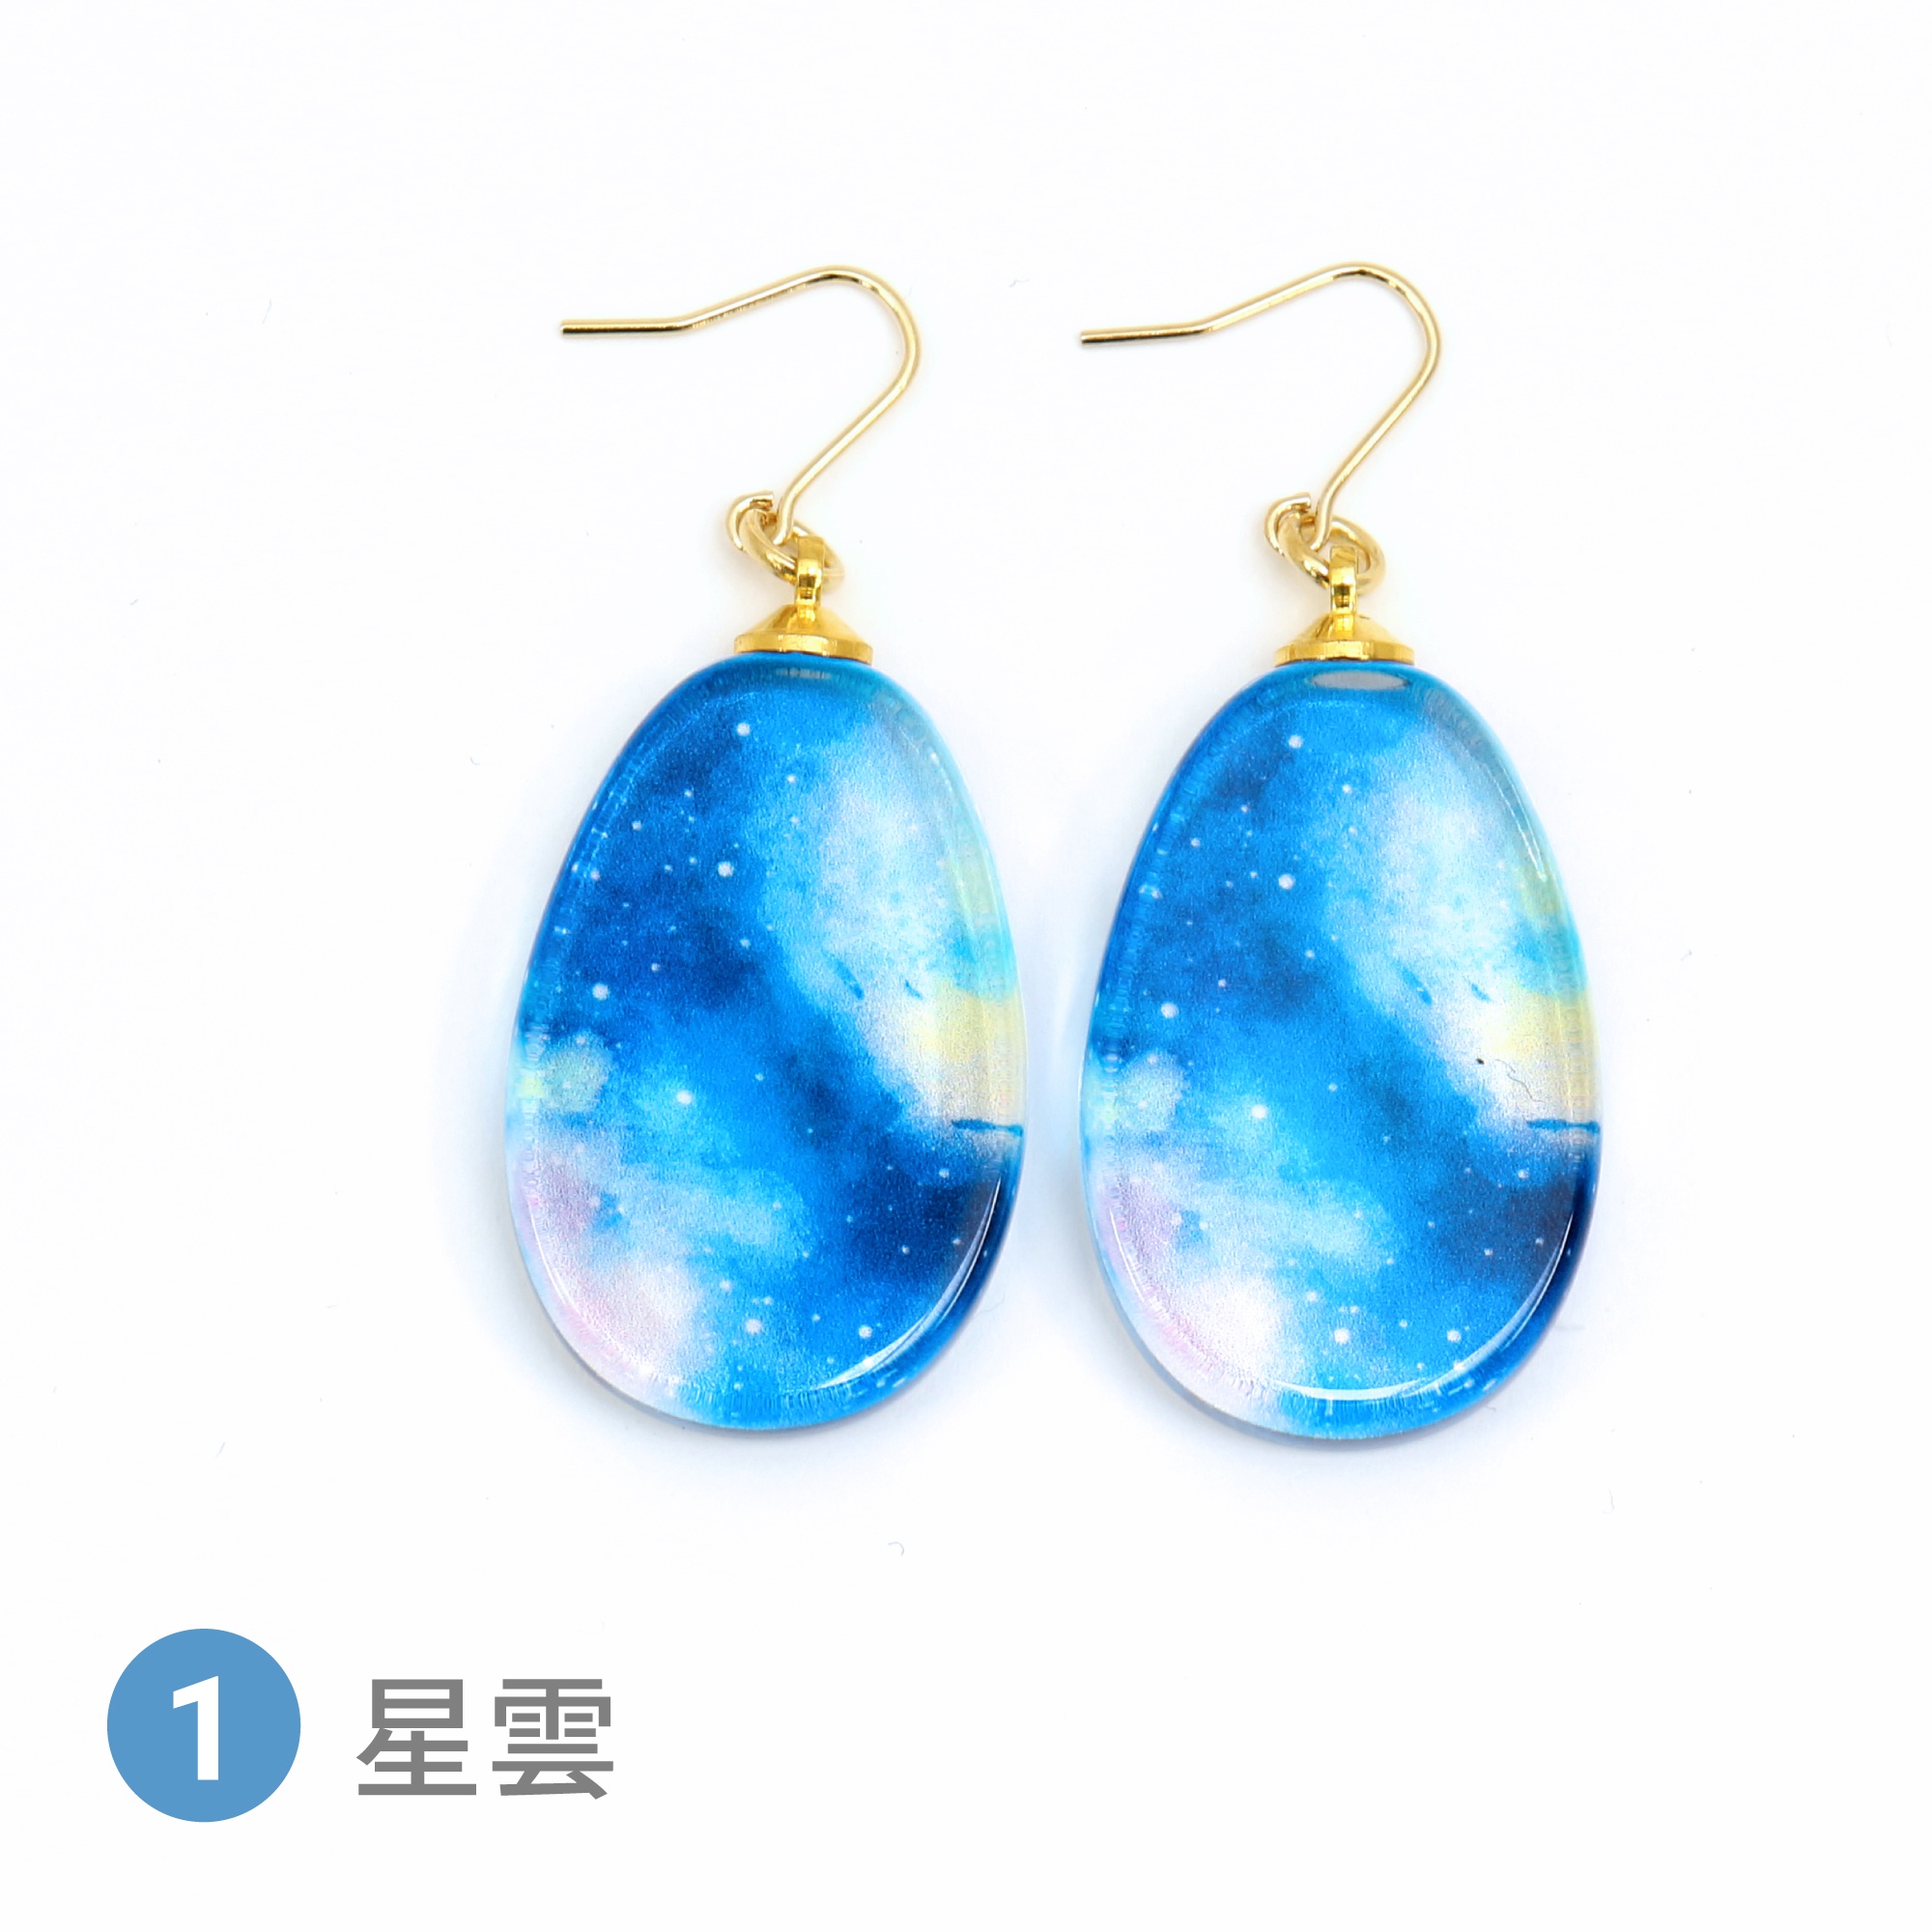 Glass accessories Pierced Earring STARRY SKY nebula drop shape